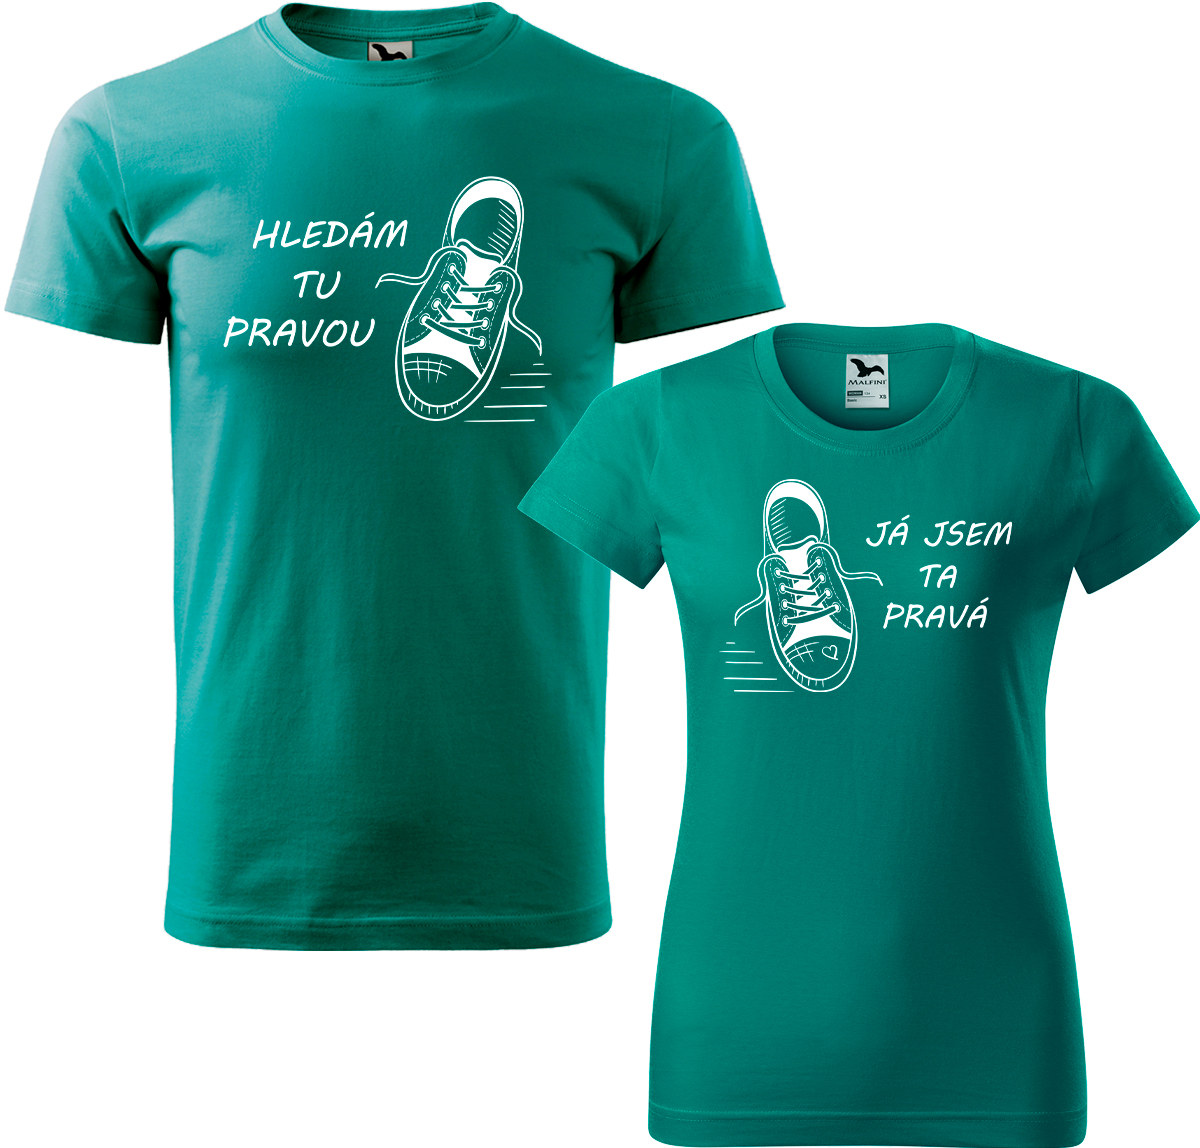 Trička pro páry - Kecky Barva: Emerald (19), Velikost dámské tričko: L, Velikost pánské tričko: XL